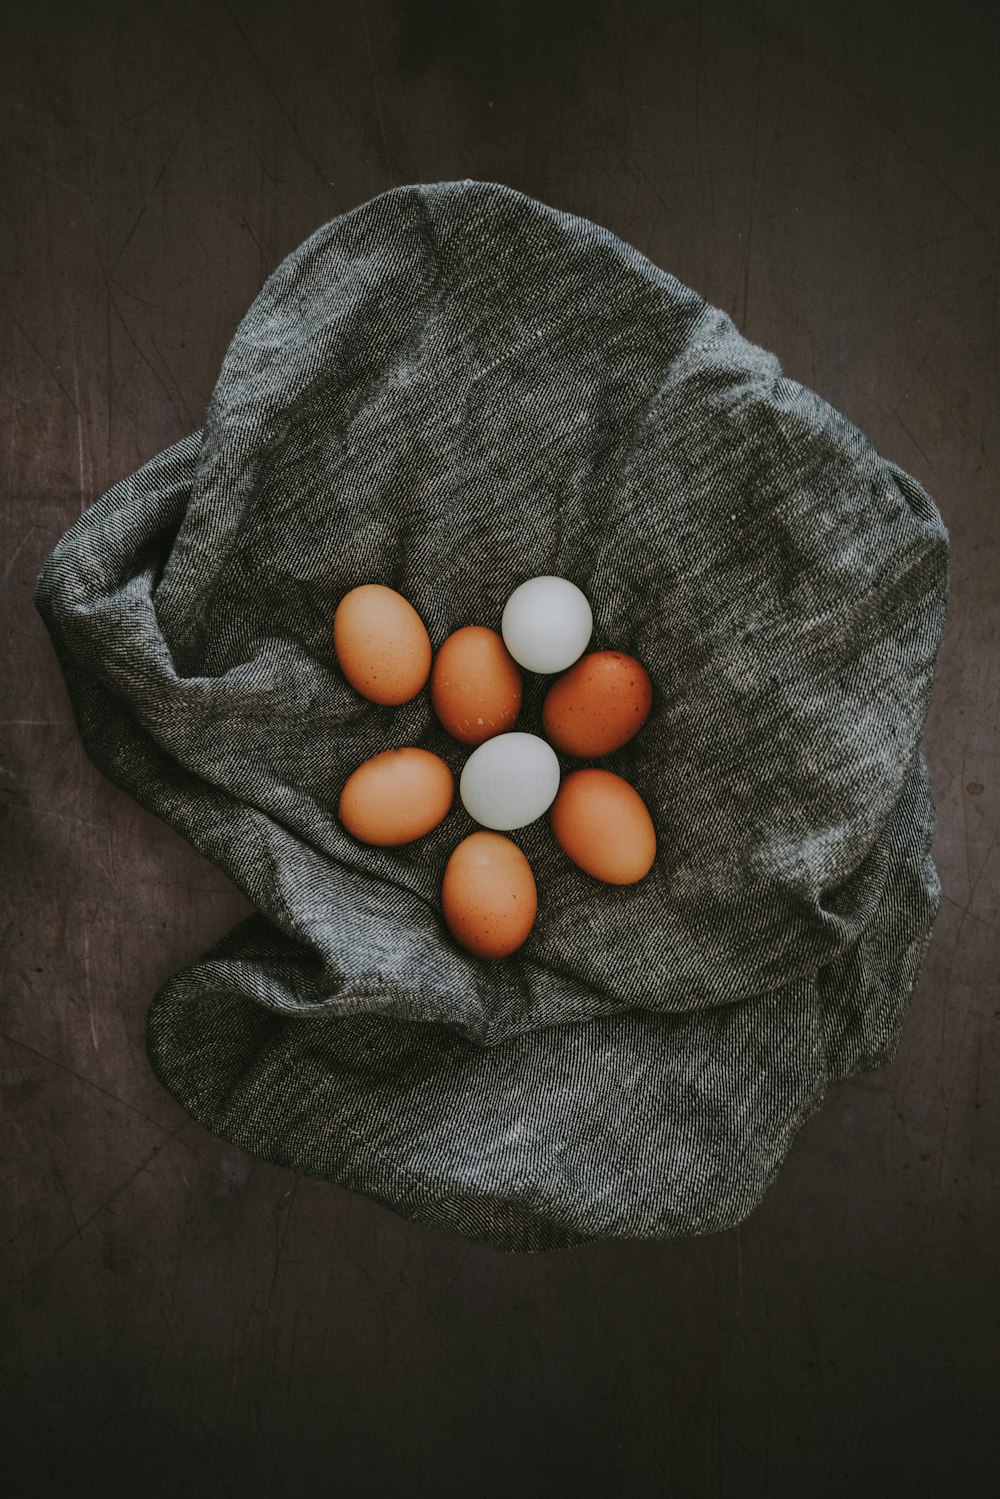 회색 직물에 흰색과 갈색 달걀 로트